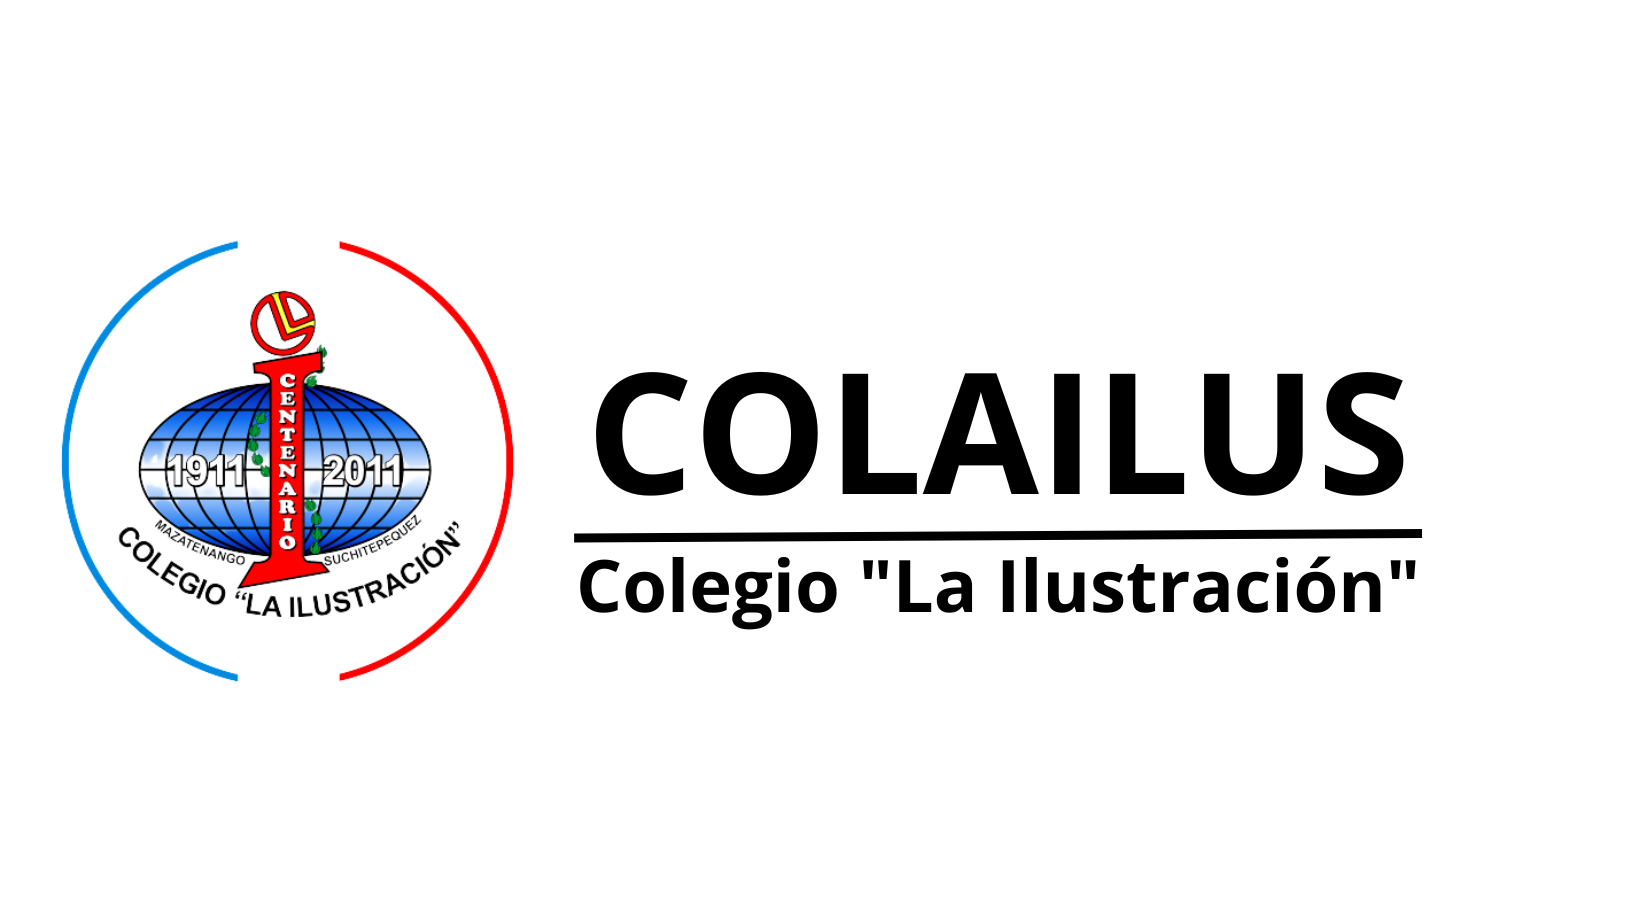 Colailus